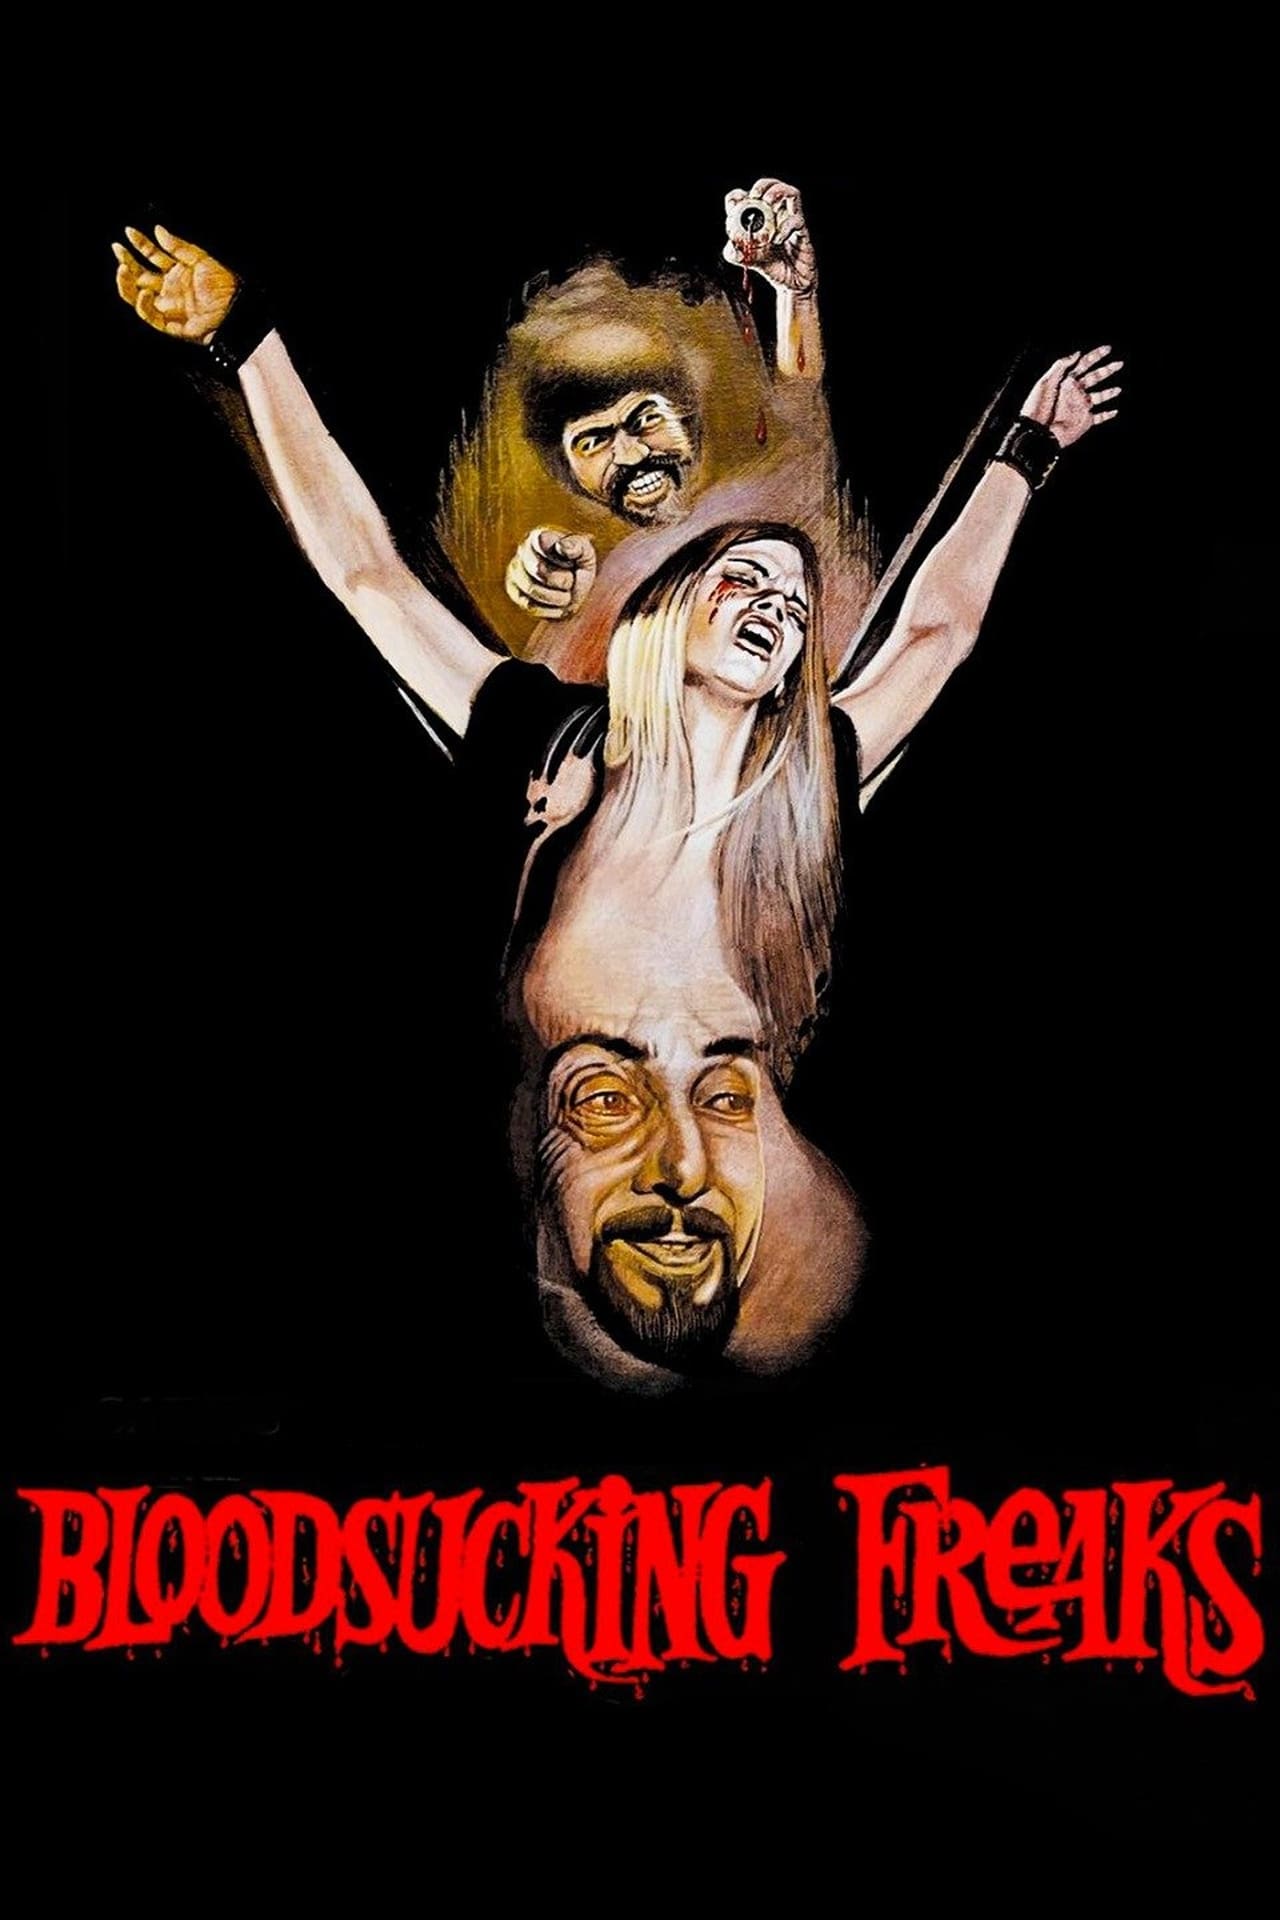 Bloodsucking Freaks poster